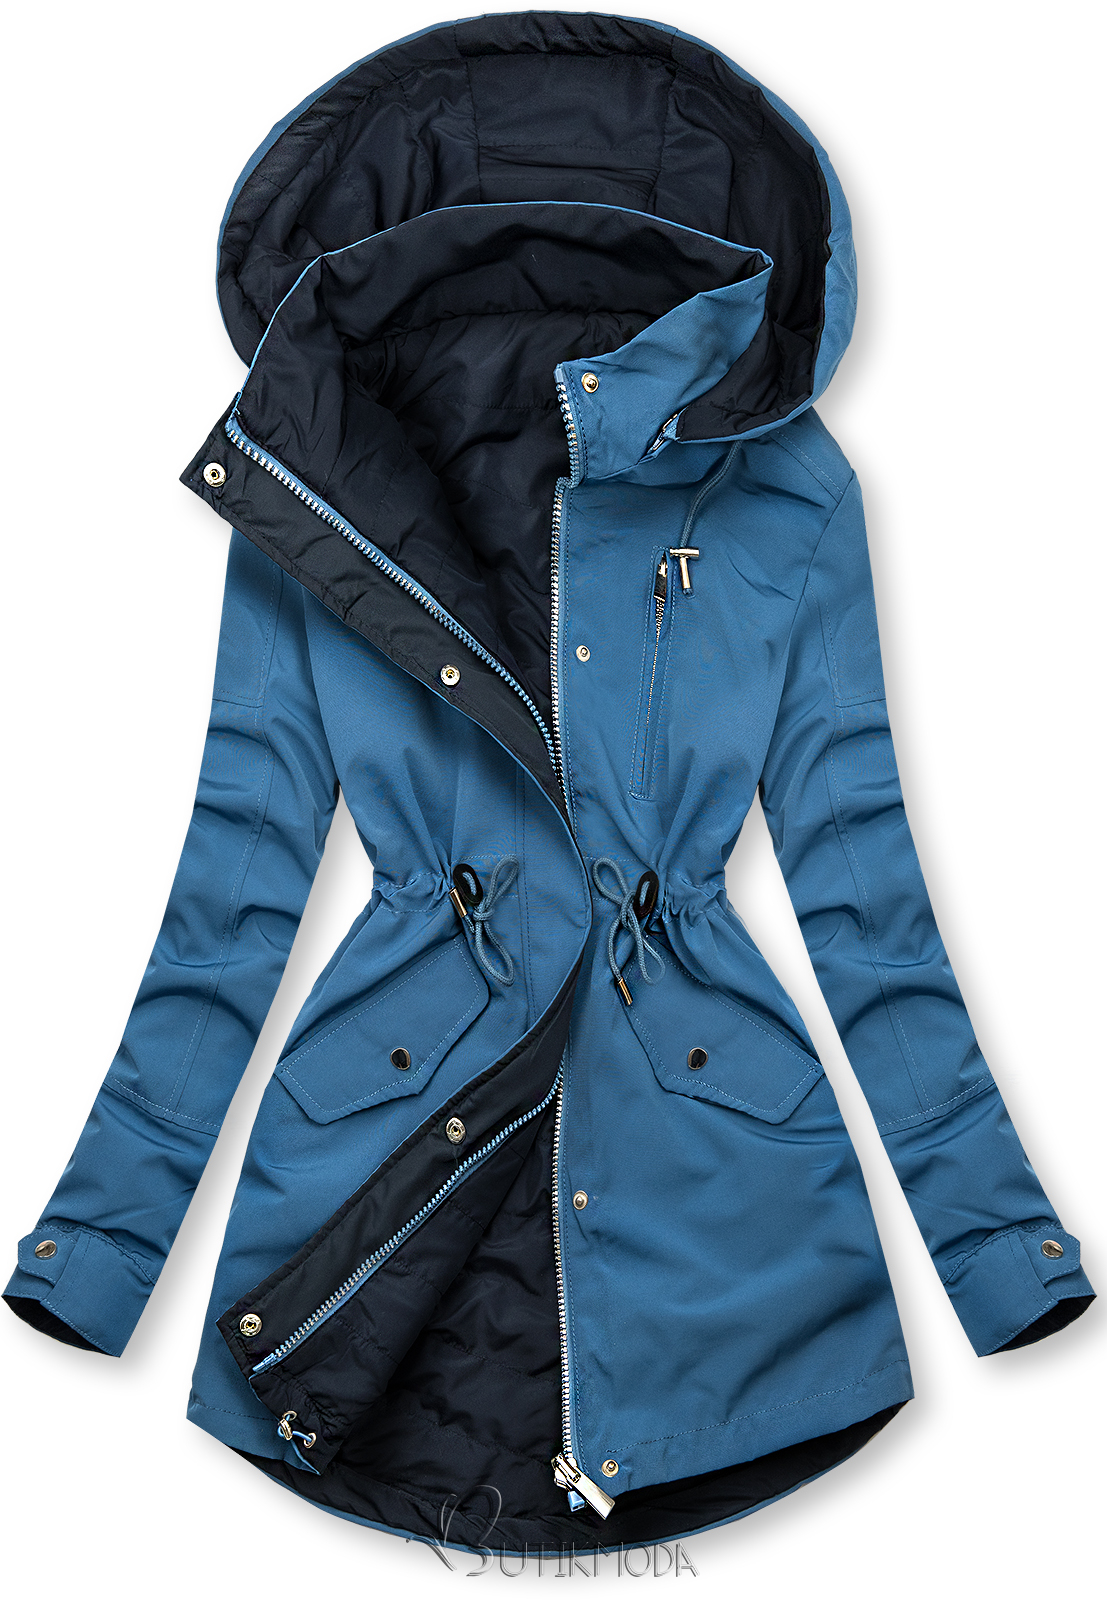 Kifordítható kabát - kék és sötétkék színű